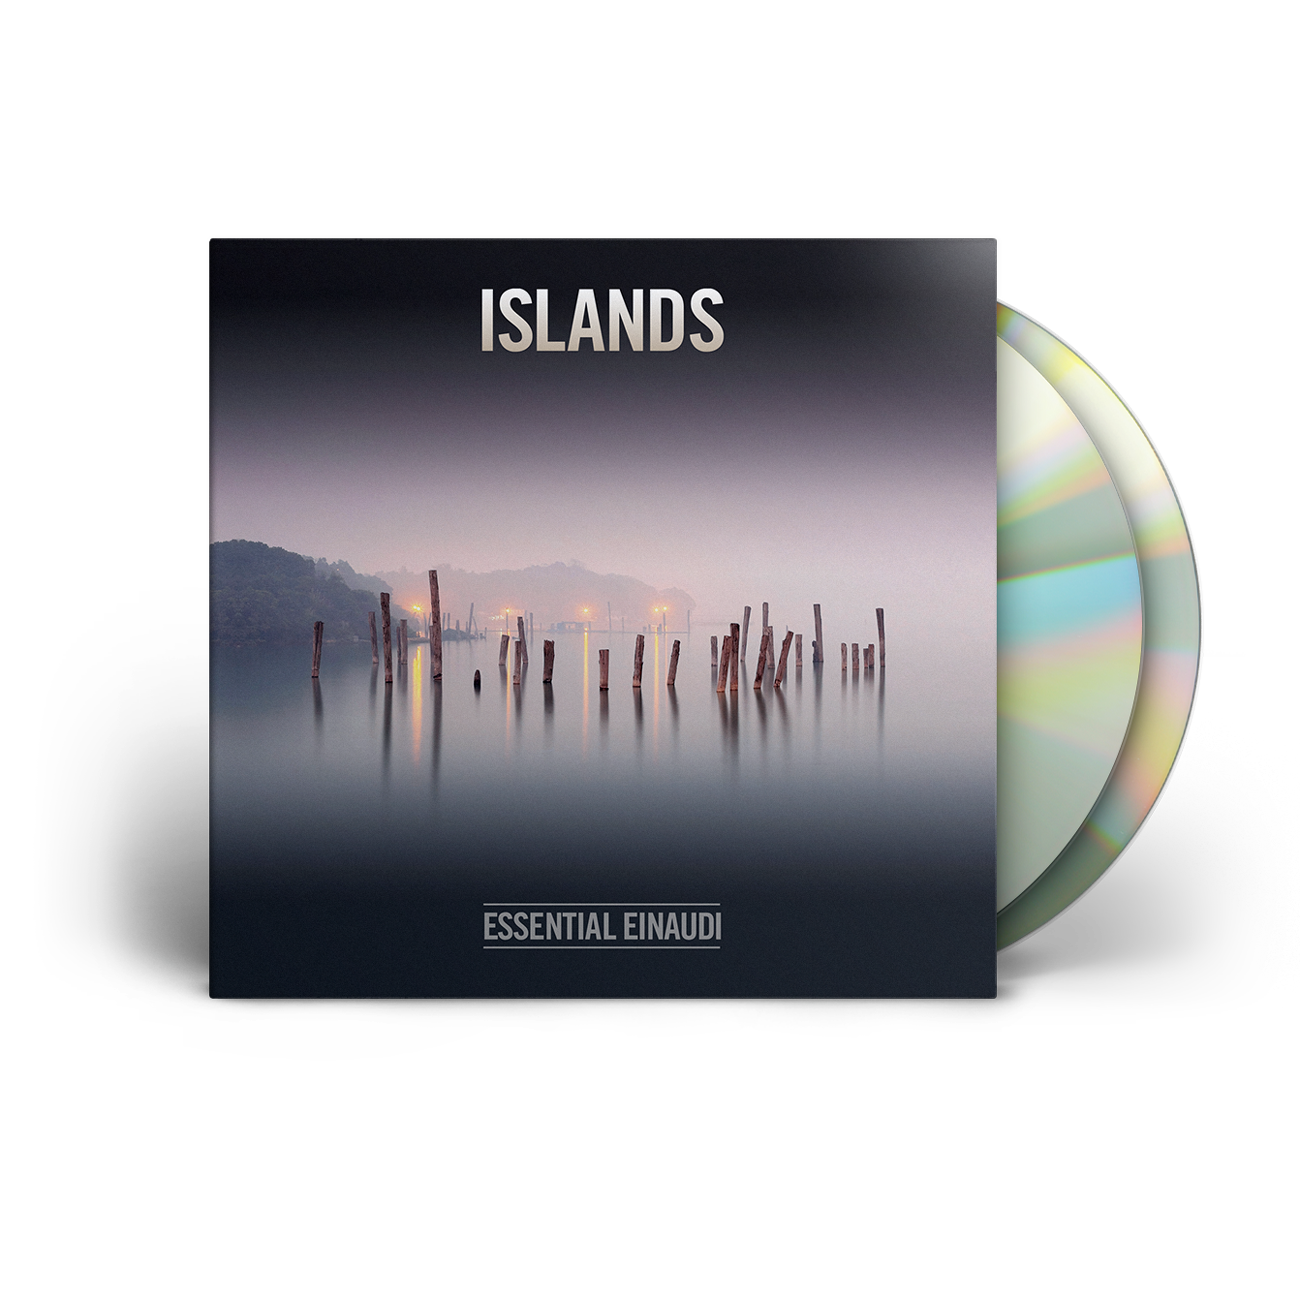 Ludovico Einaudi - CDs, Vinyl & Boxsets - Decca Records